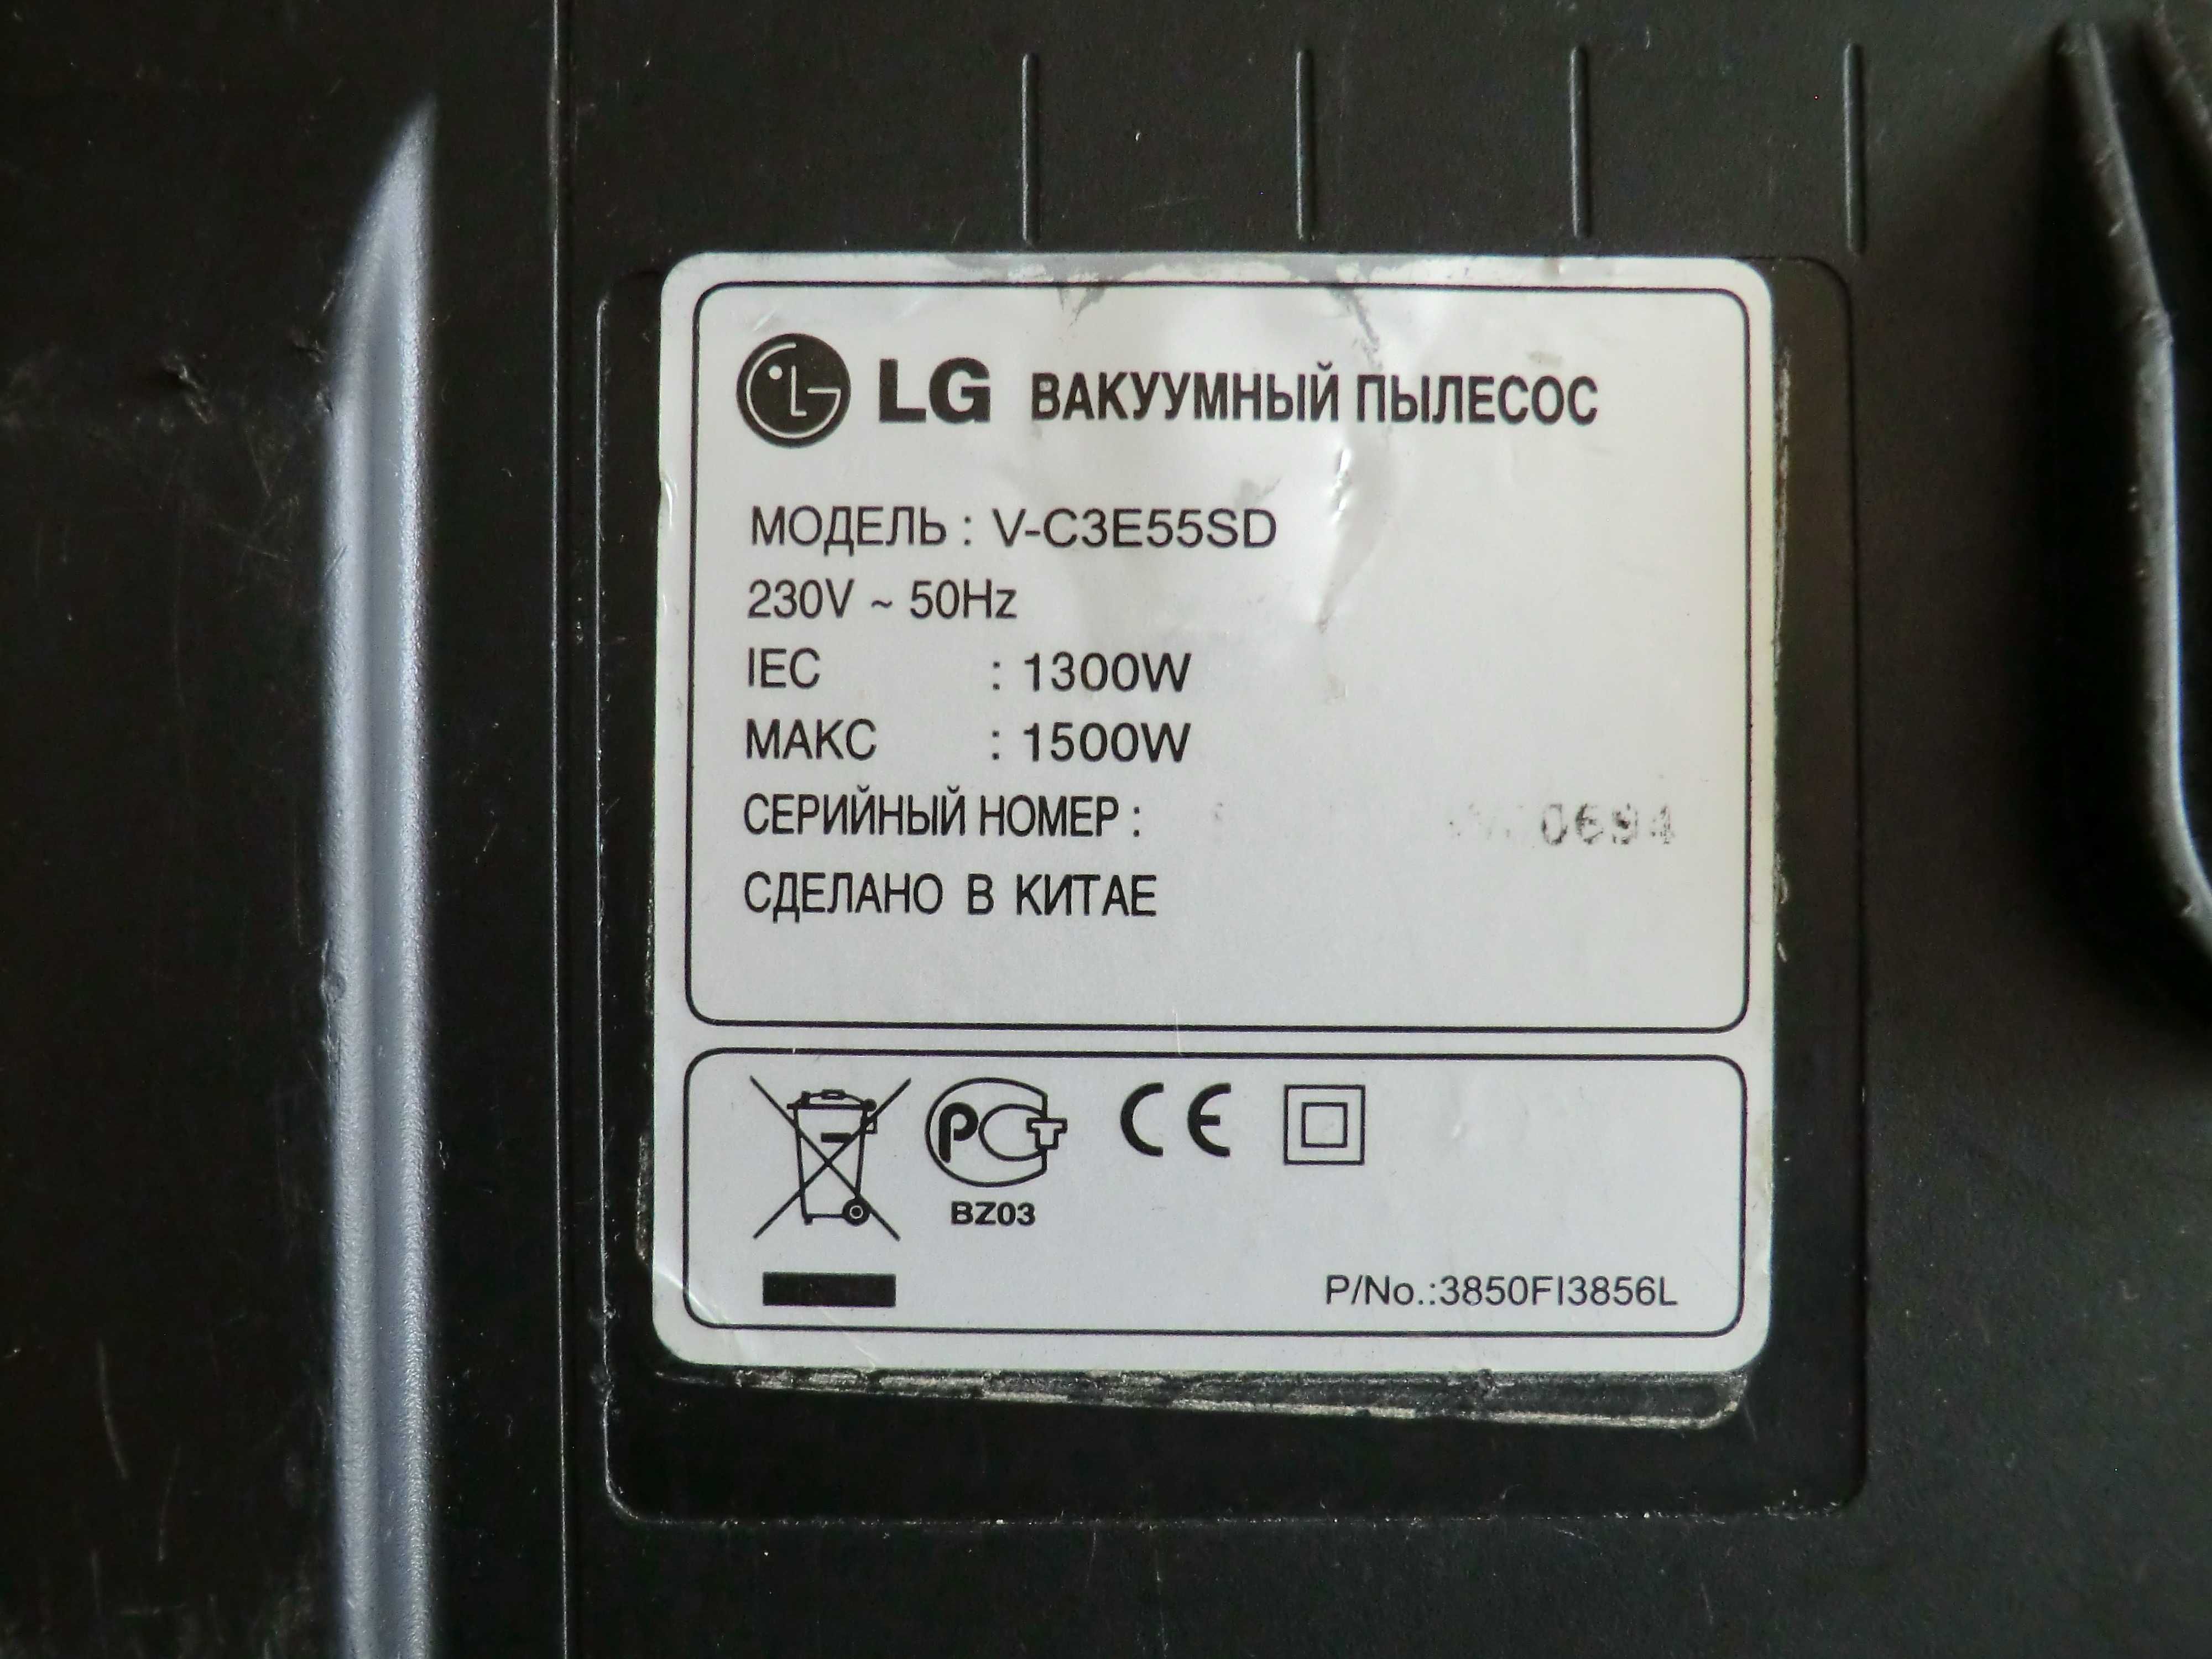 Пылесос LG-V-C3E55SD